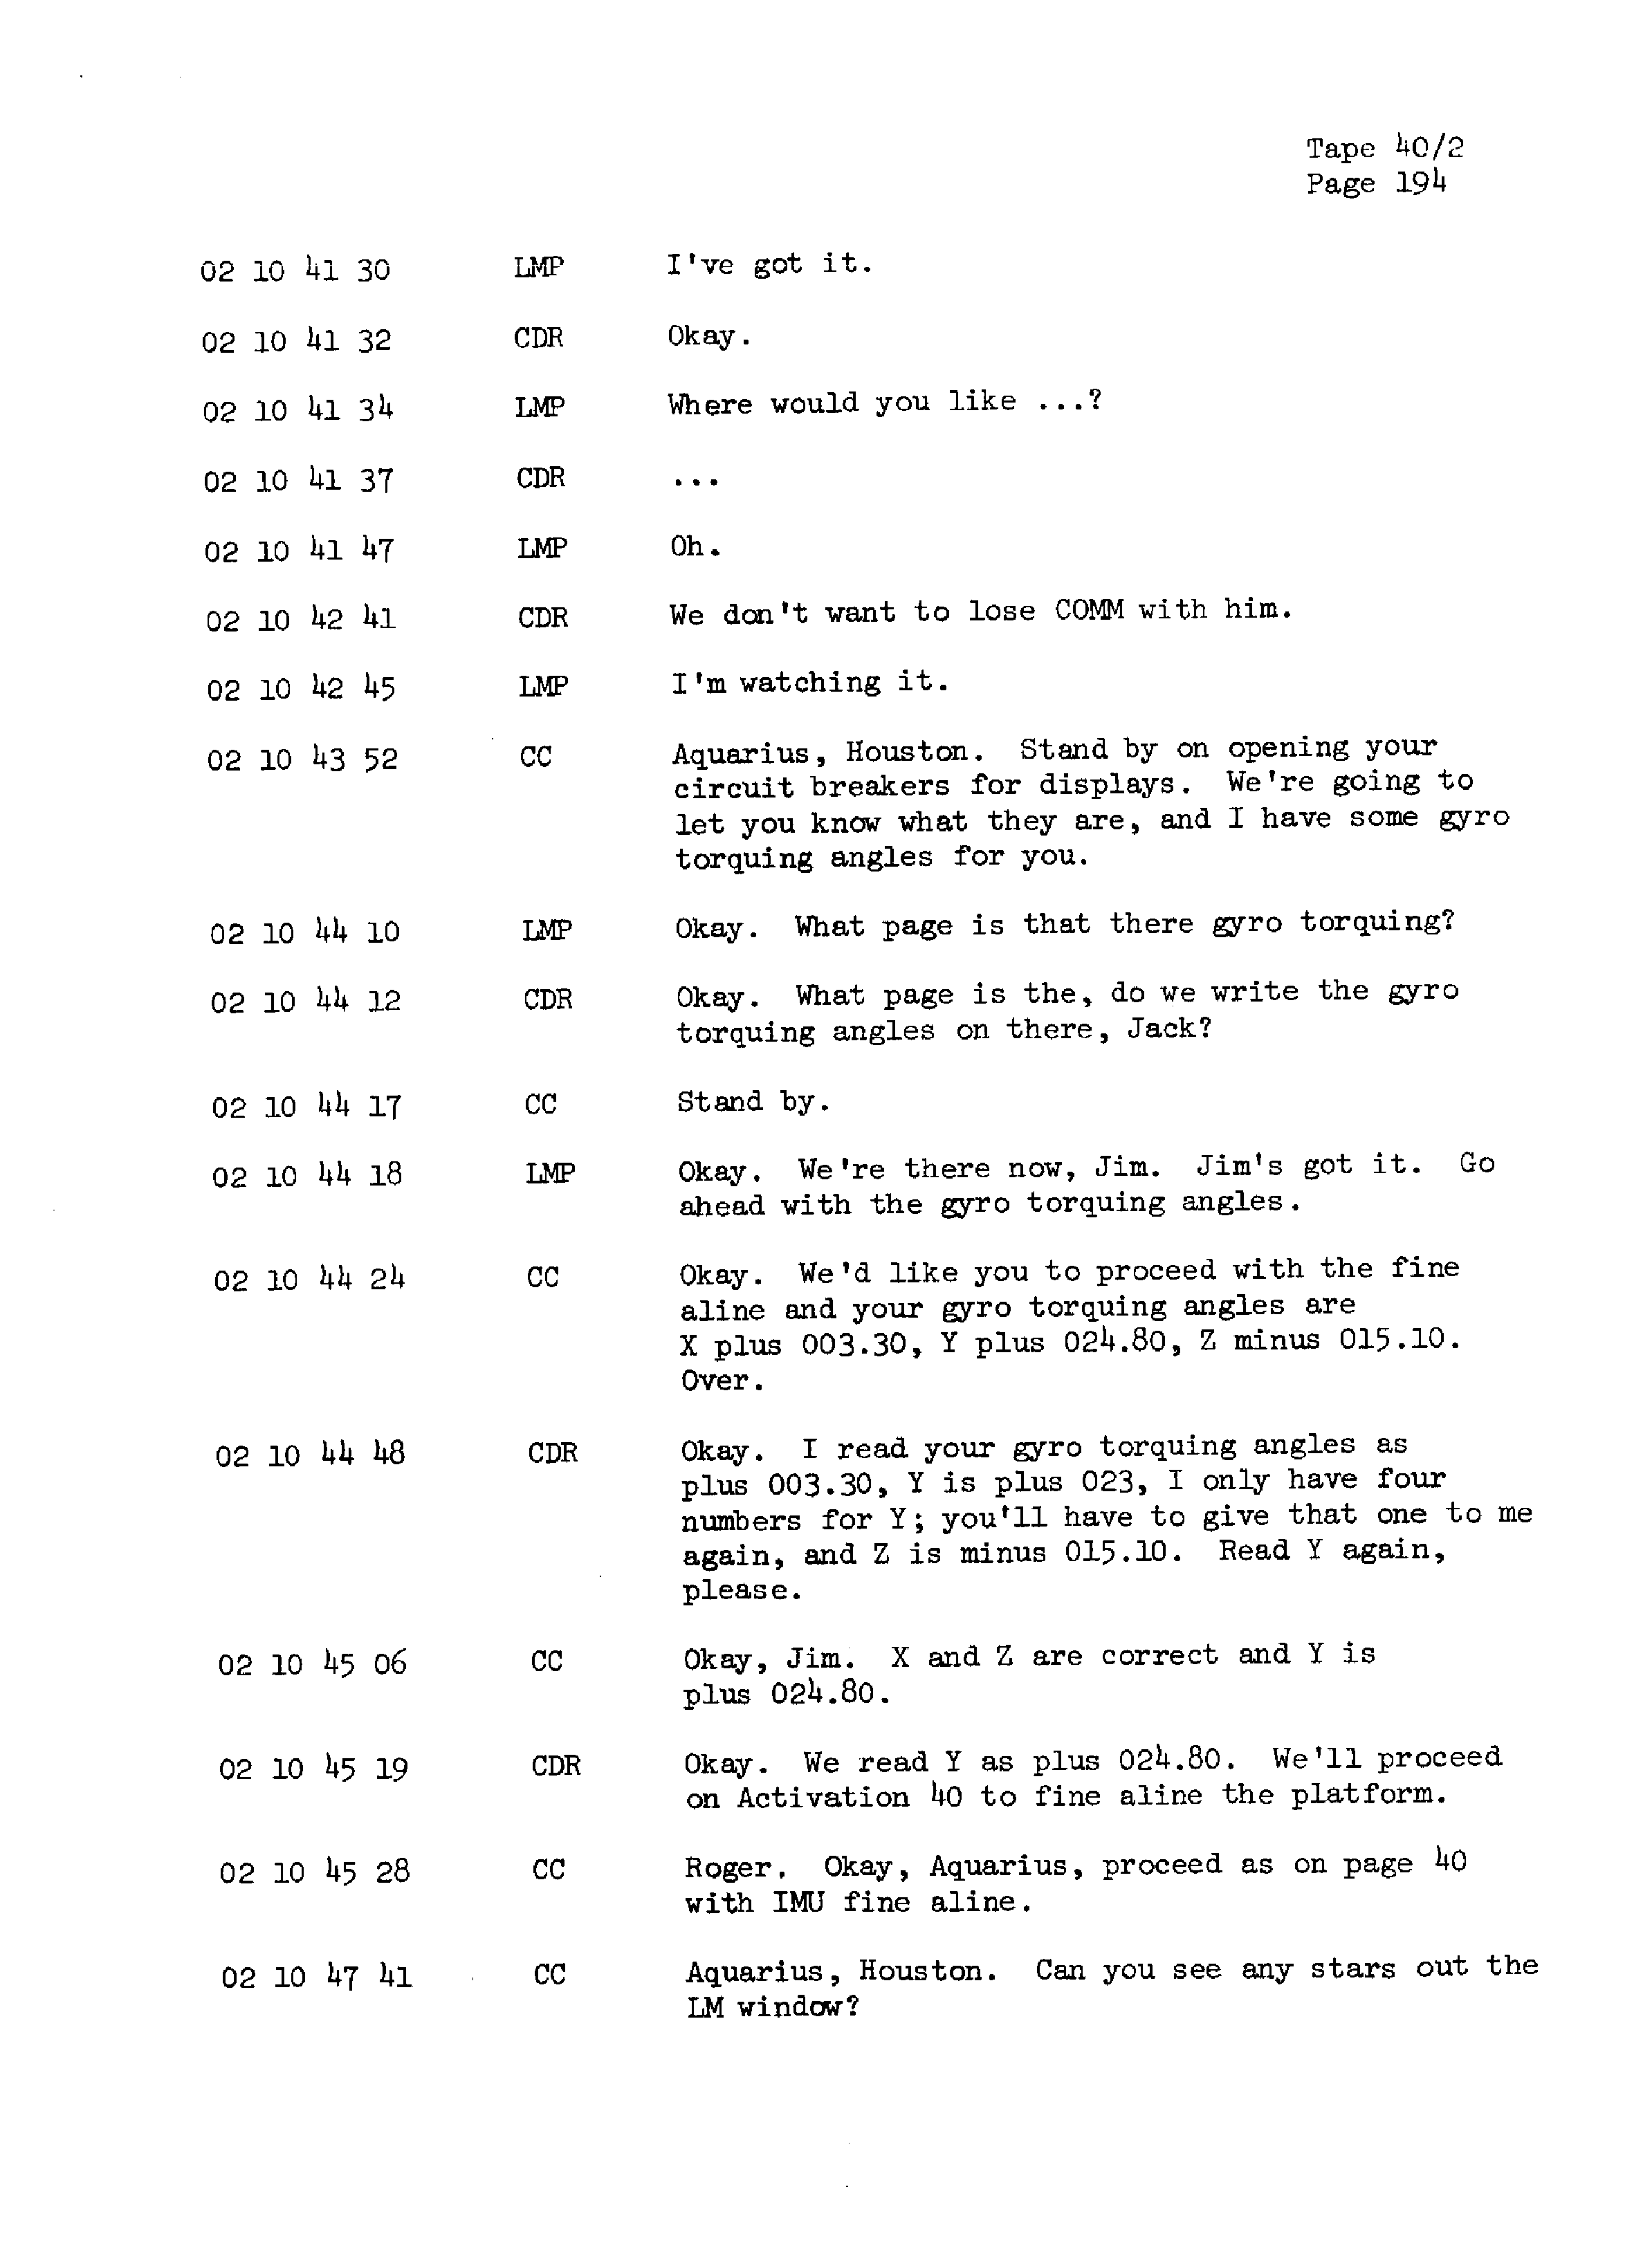 Page 201 of Apollo 13’s original transcript